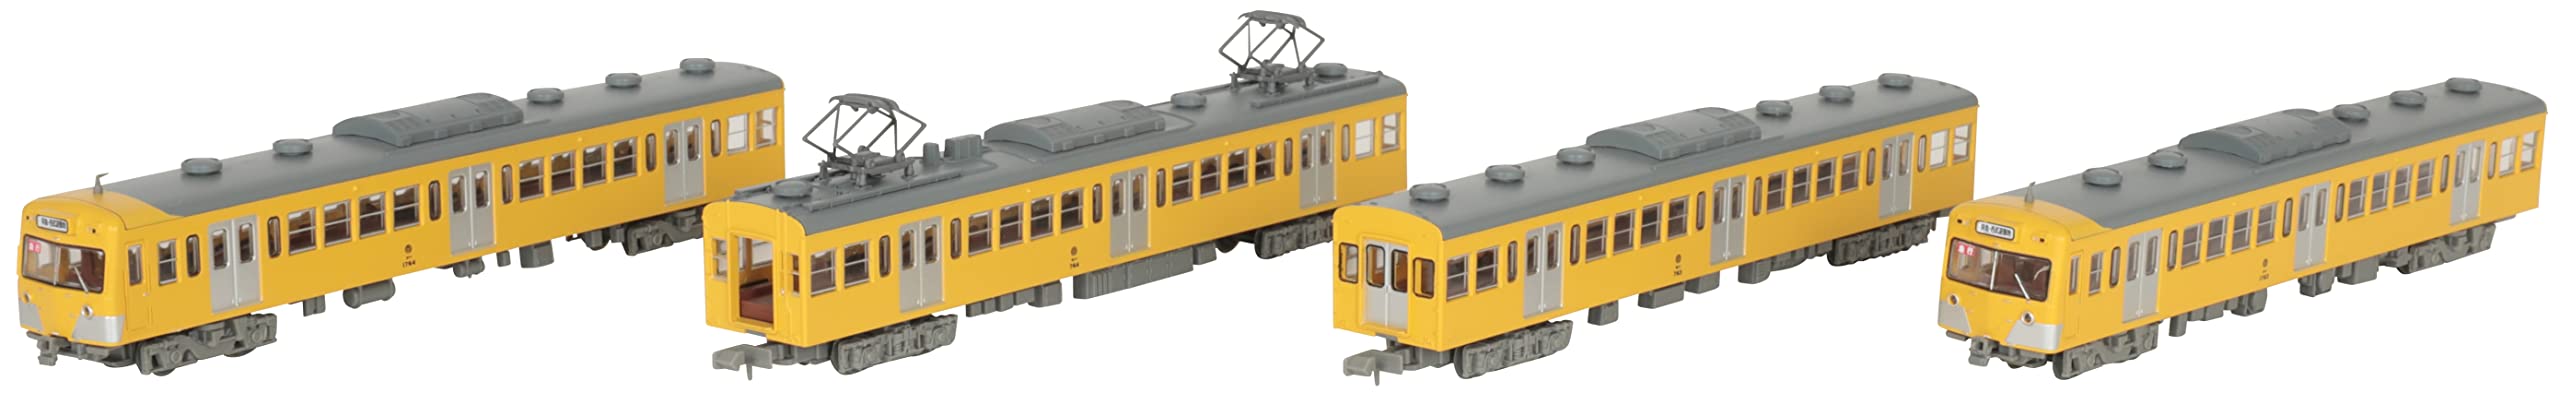 Tomytec Japan Railway Collection Iron Series 701 1763 4-Car Set Diorama 317241